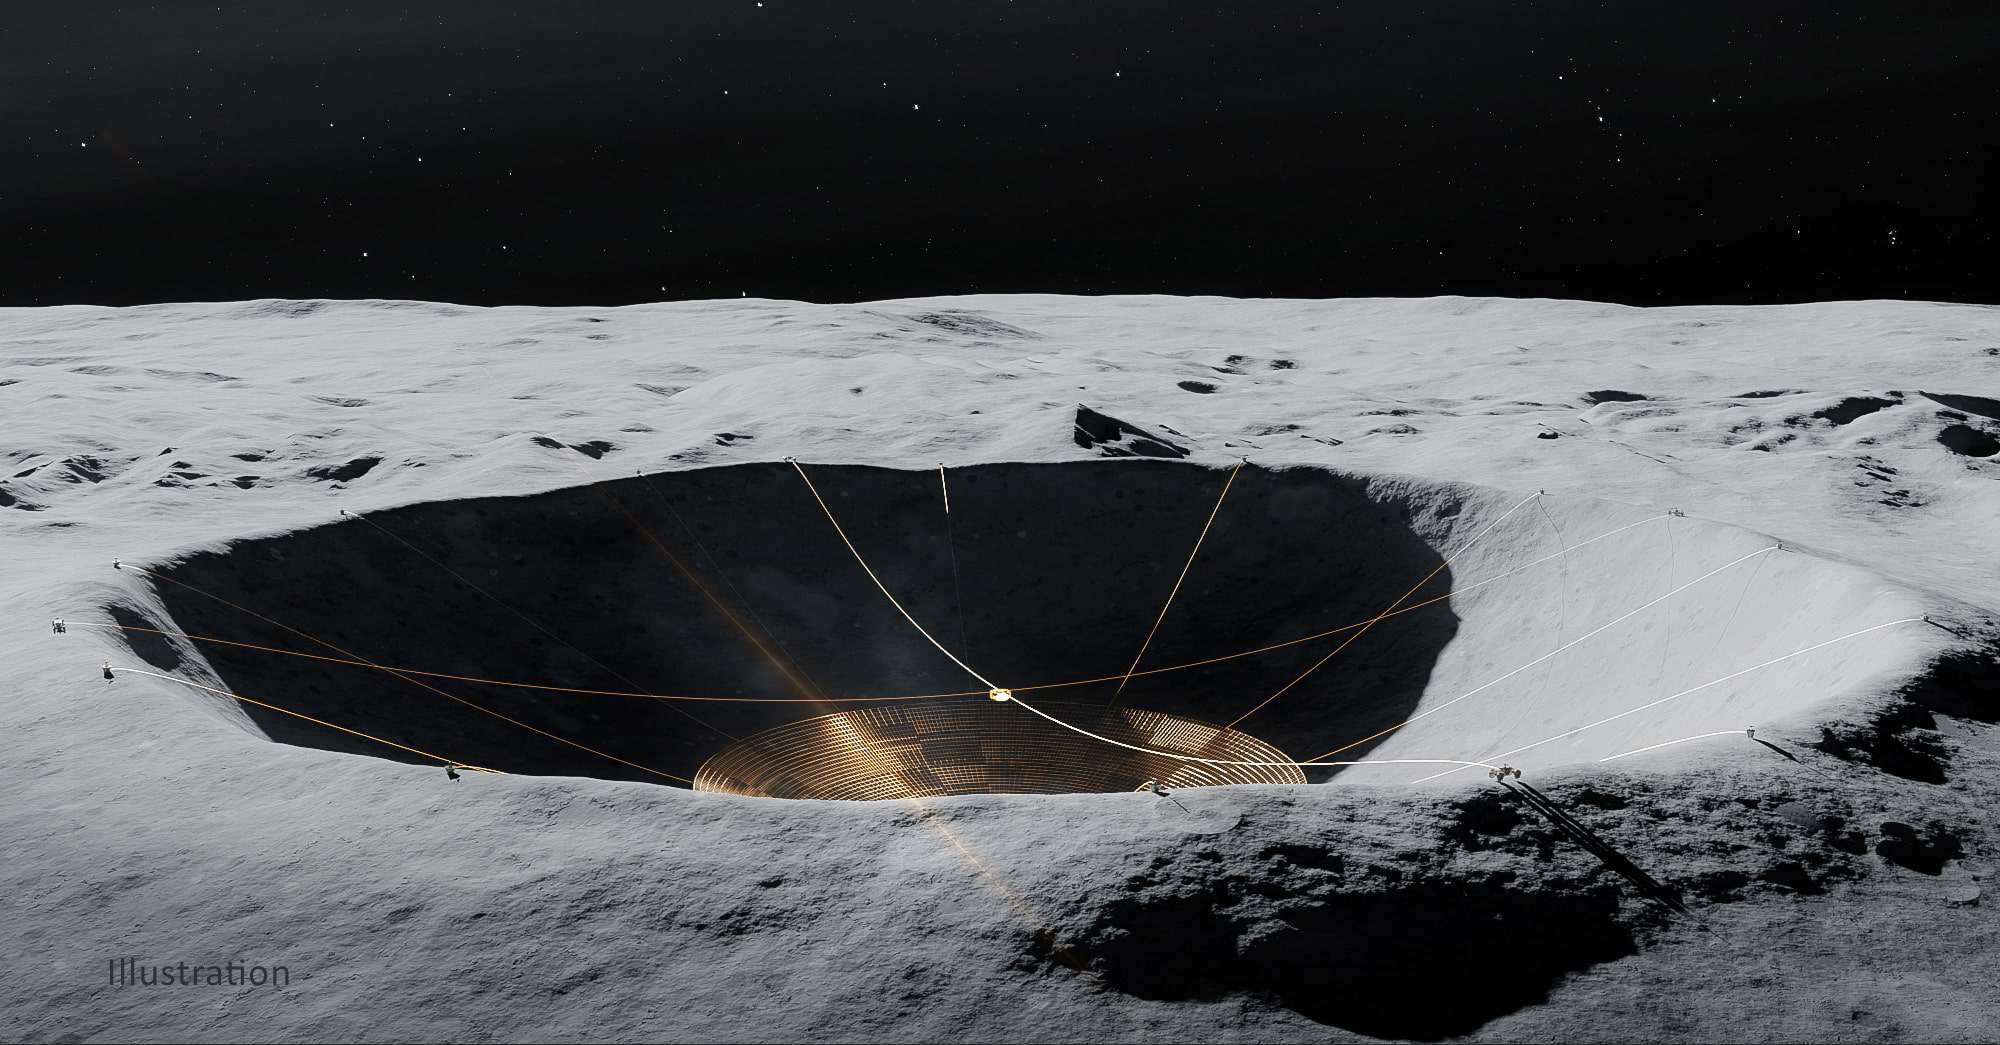 月面に巨大な「ハイパー望遠鏡」を設置する計画を科学者が発表